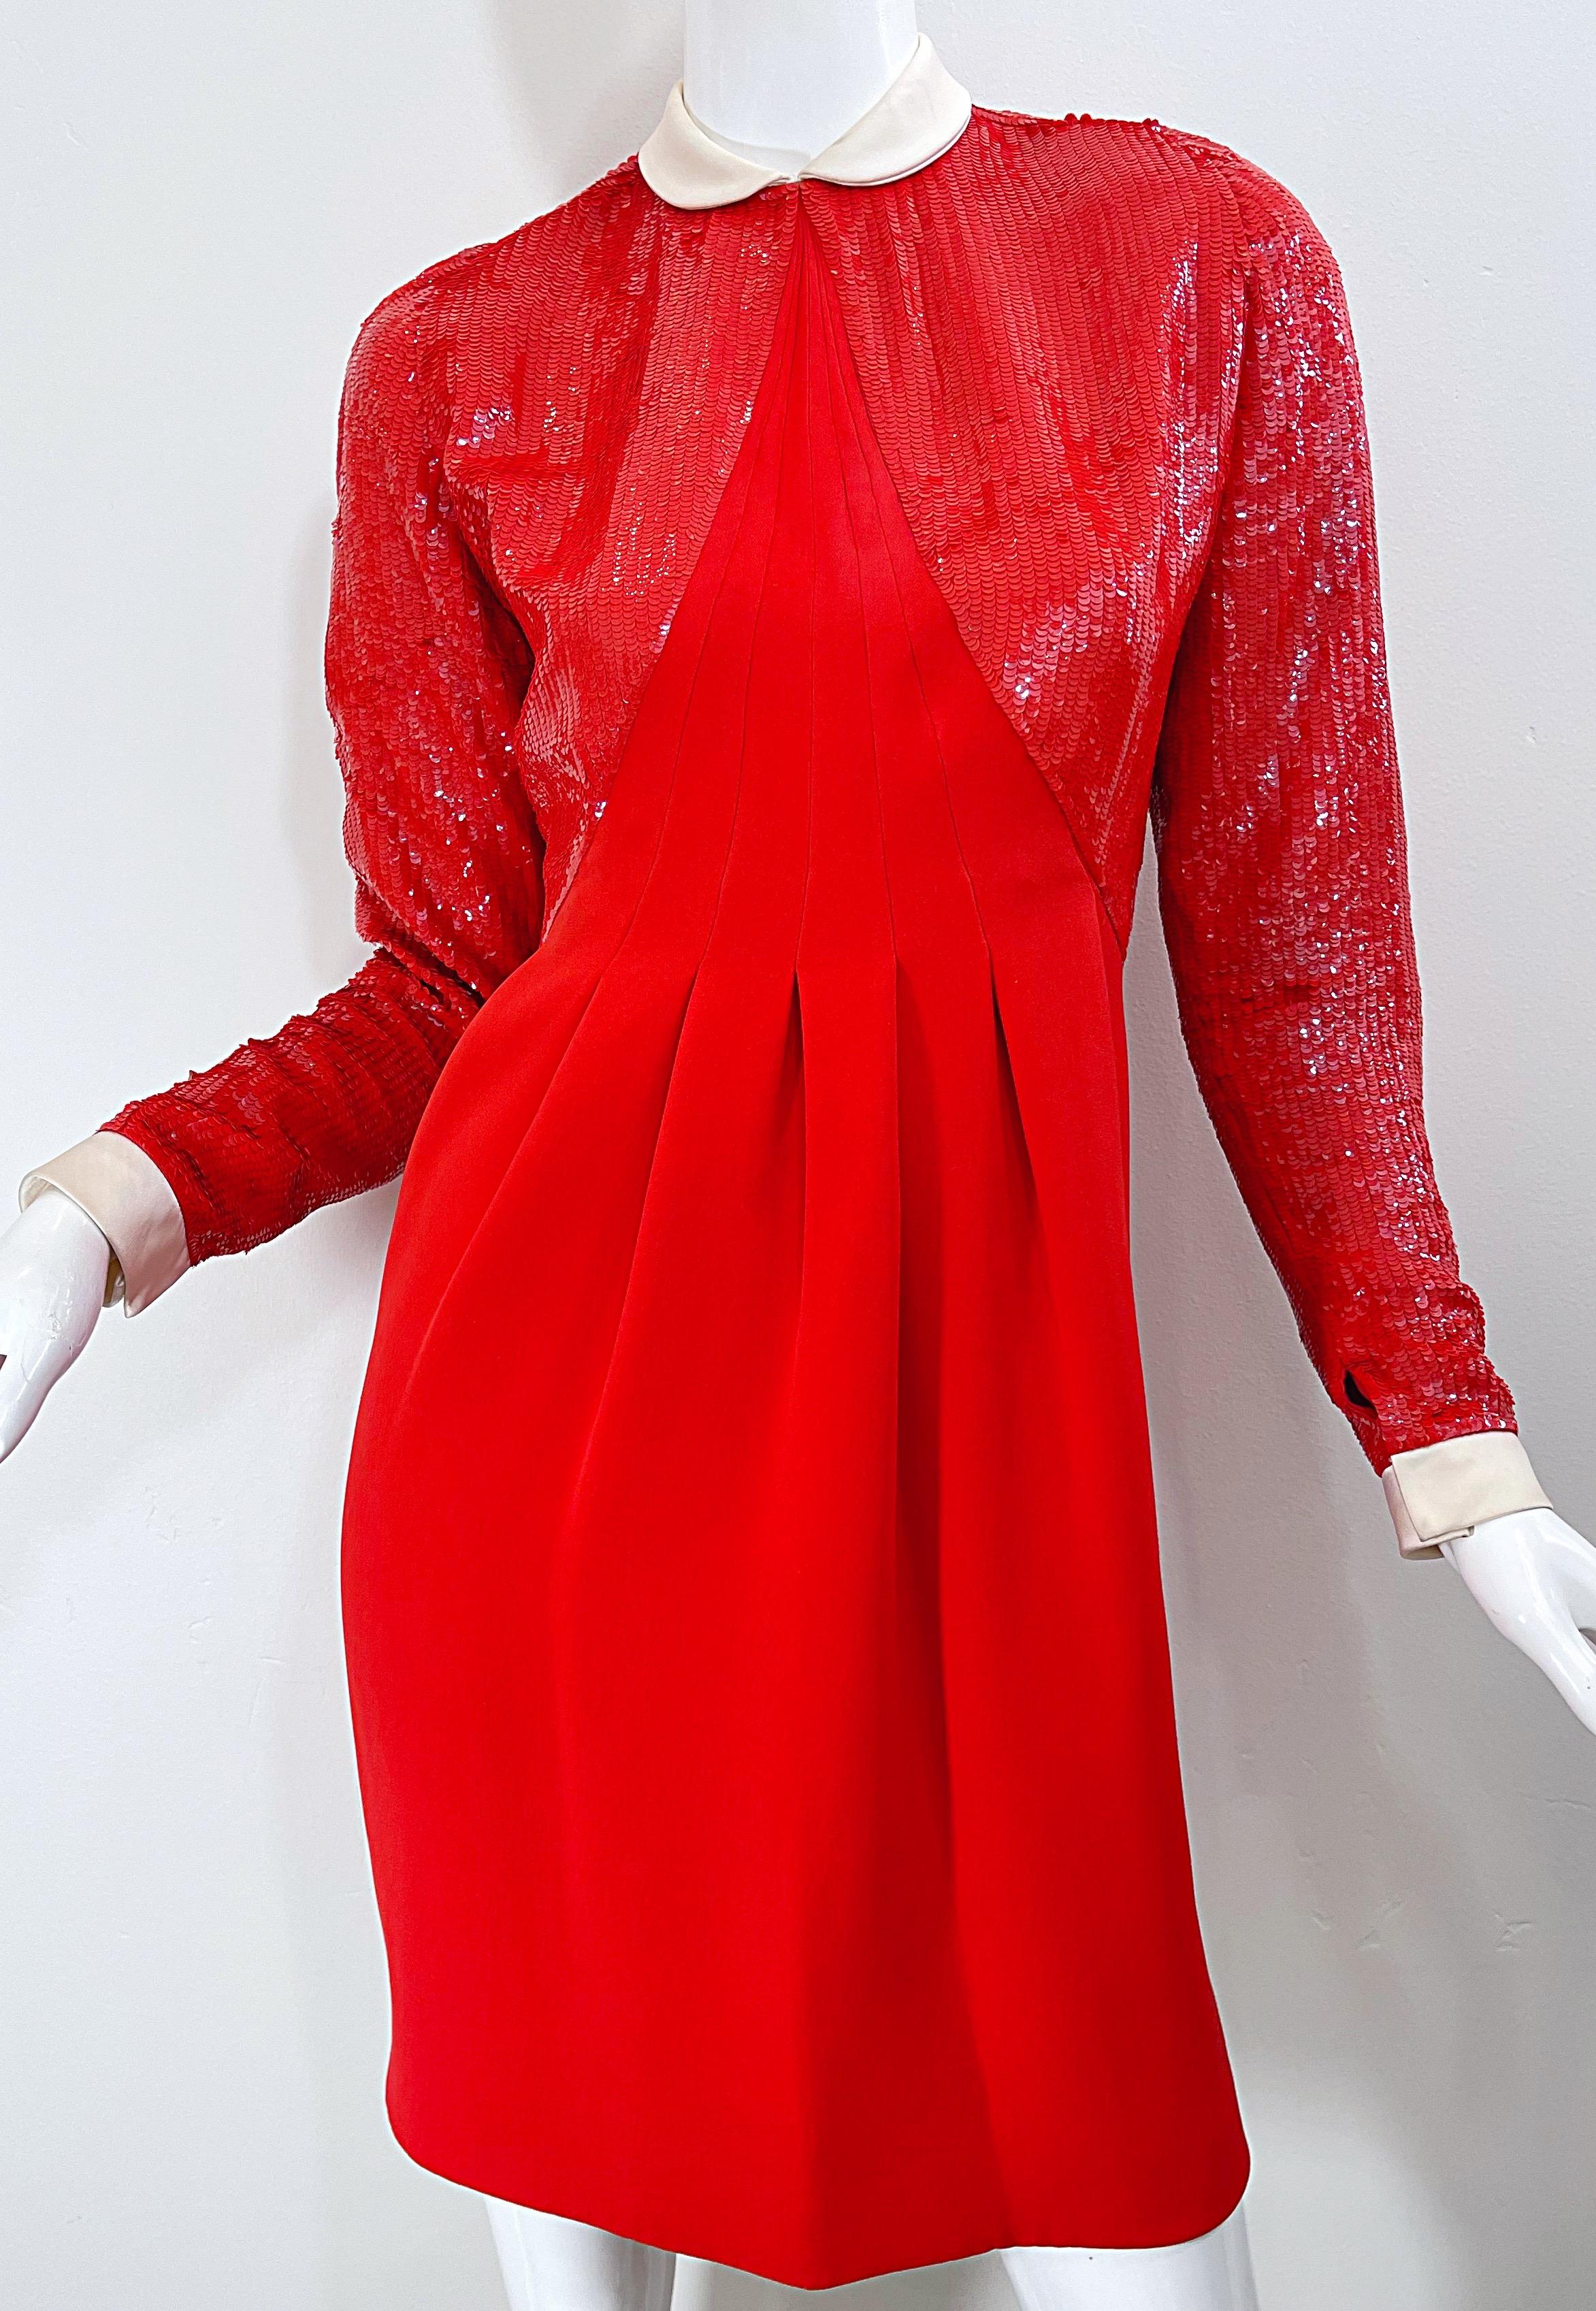 Geoffrey Beene 1980s Lipstick Red Faux Bolero Vintage 80s Tuxedo Dress  For Sale 3